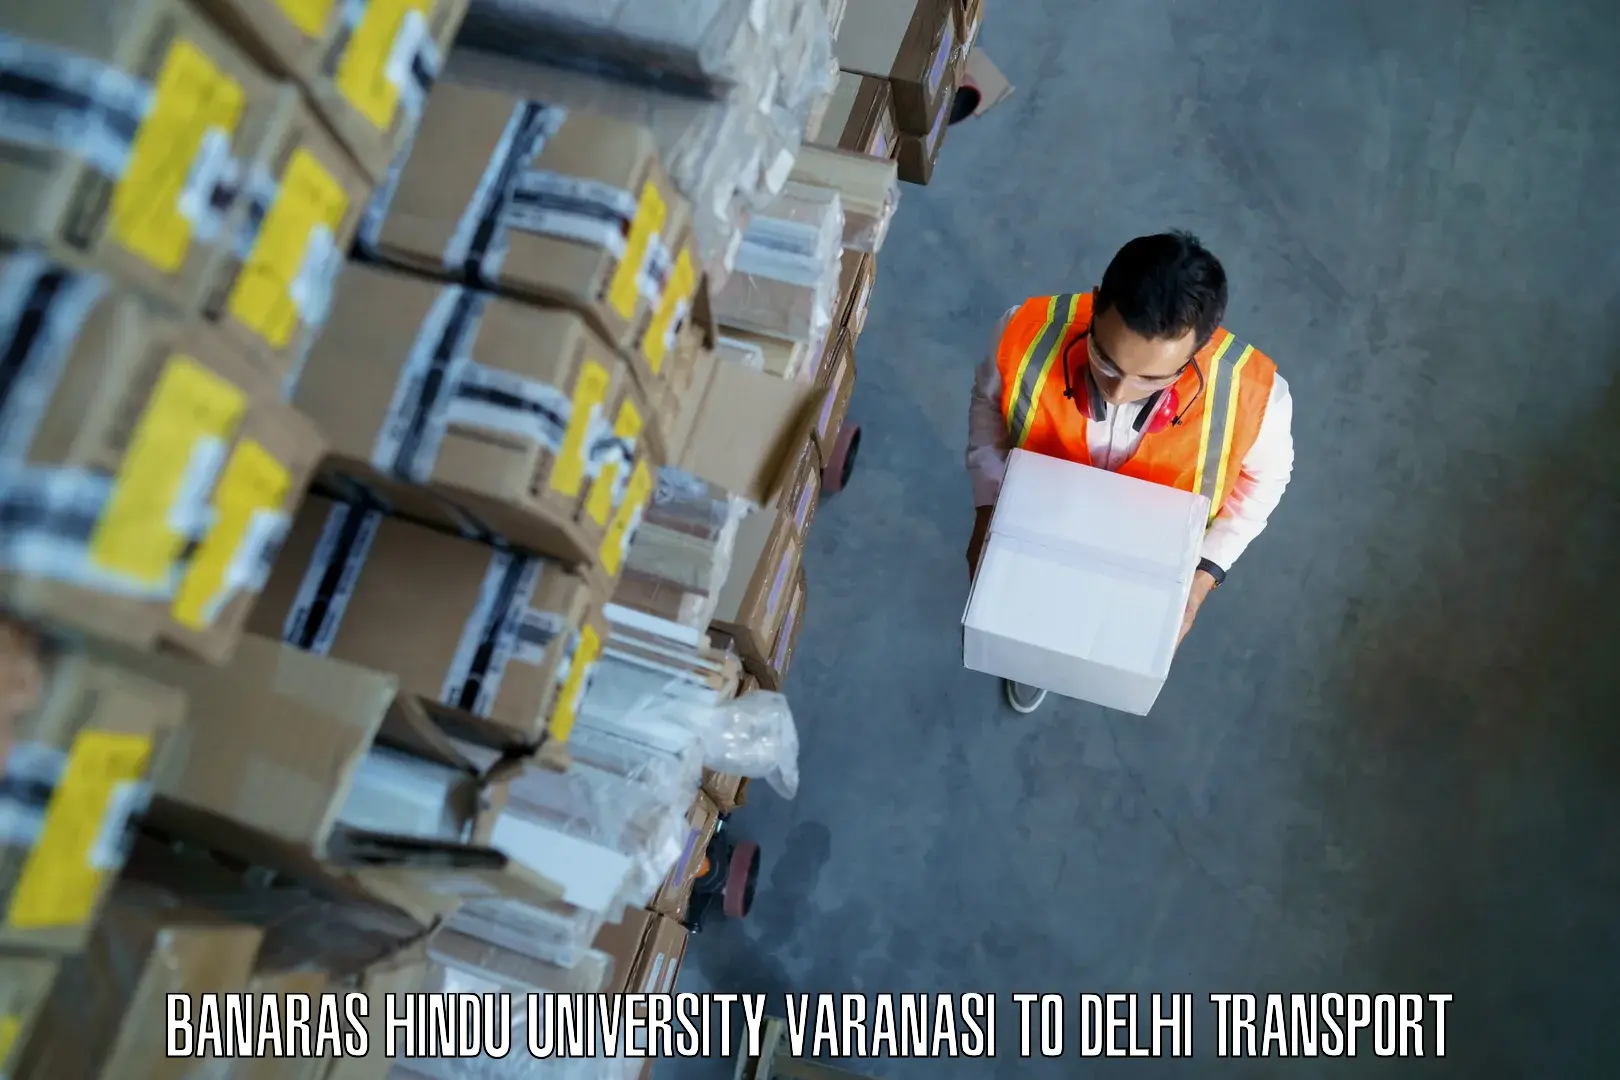 Air cargo transport services Banaras Hindu University Varanasi to NIT Delhi